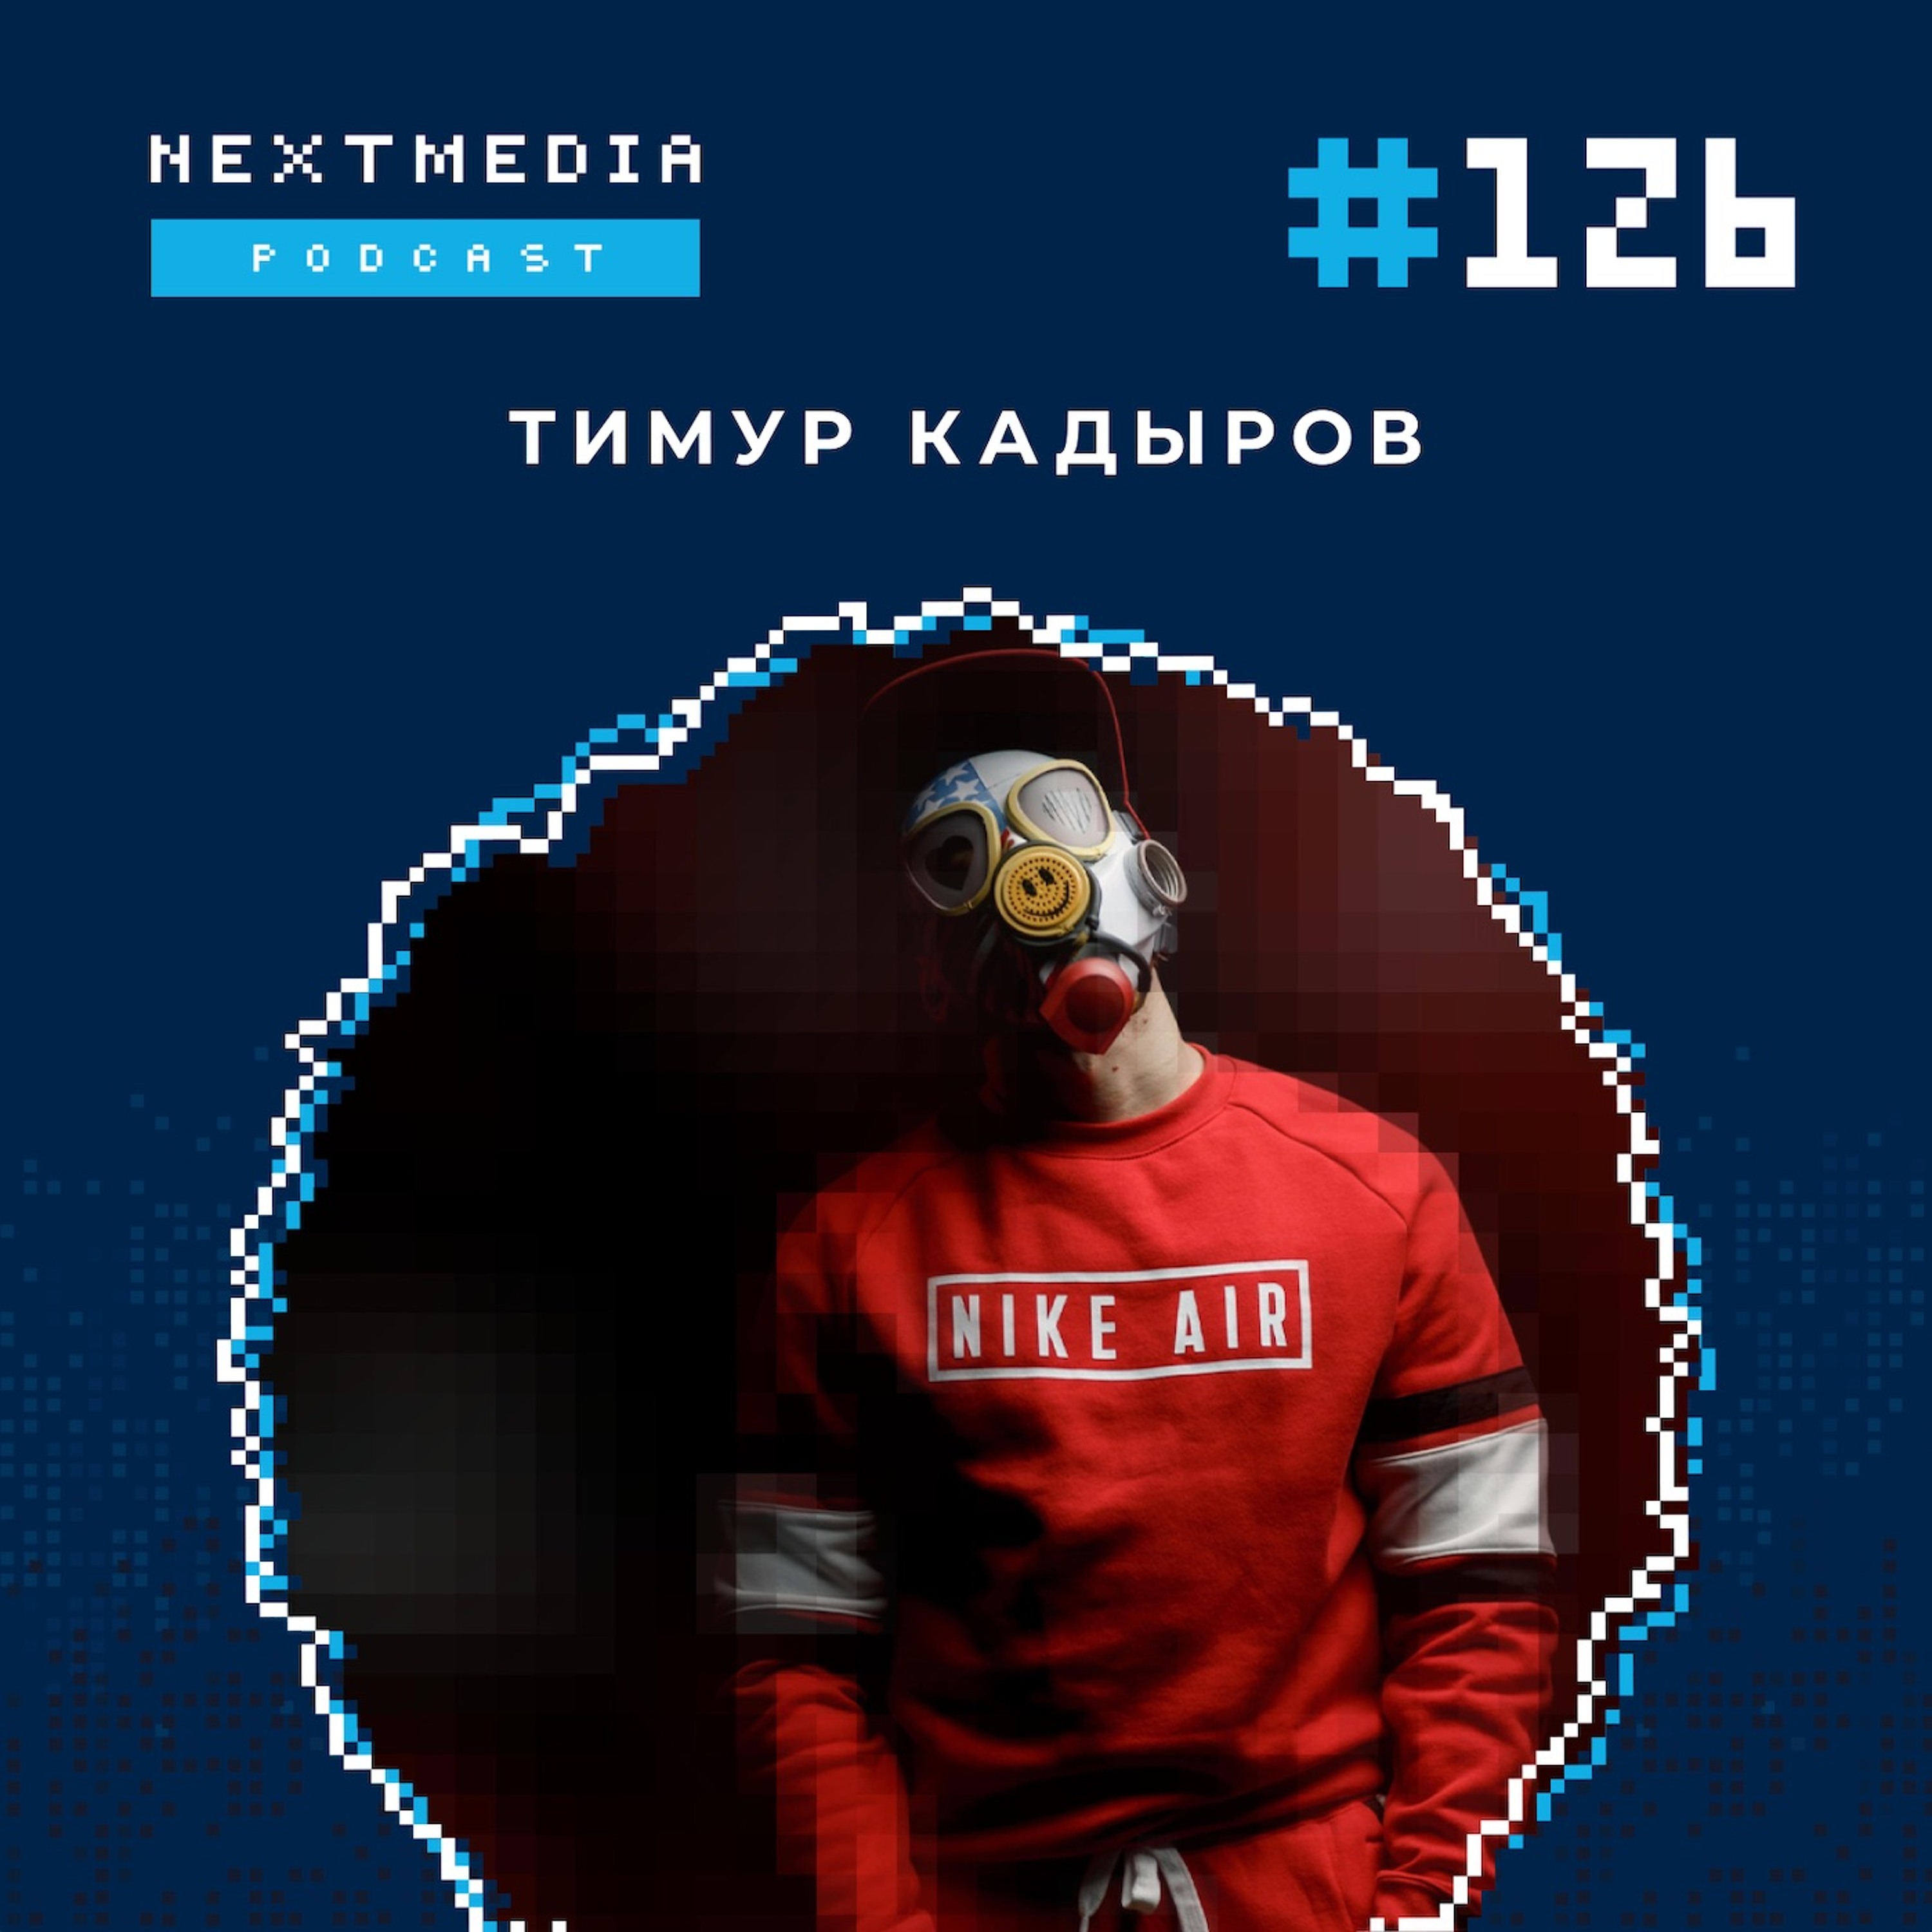 Автоворонки и геймификация. Кейс запуска на 13 млн рублей во ВКонтакте - Тимур Кадыров